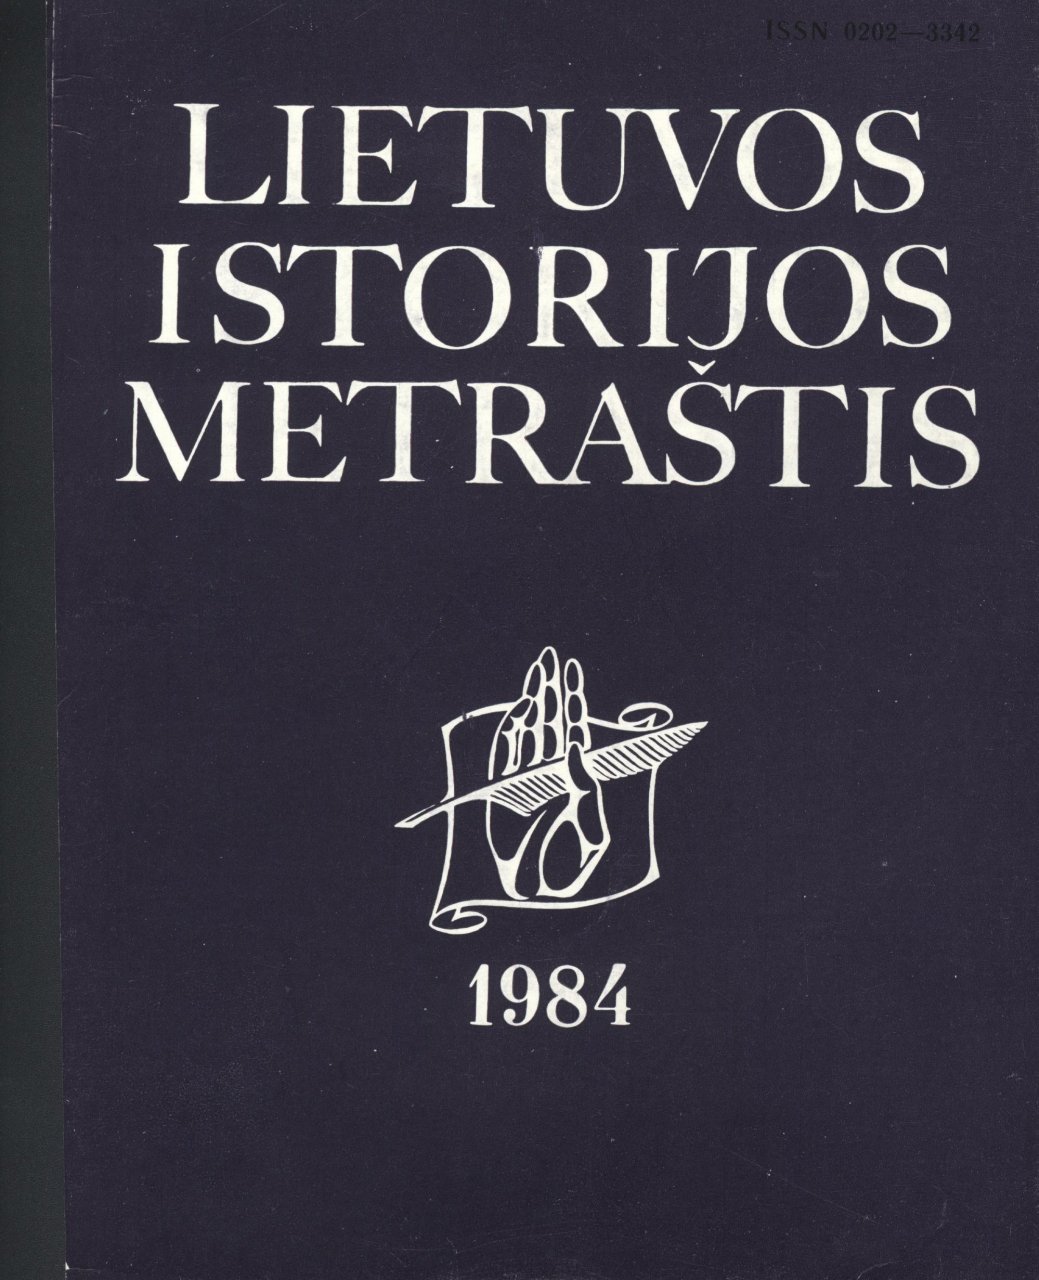 Lietuvos istorijos metraštis 1984 metai